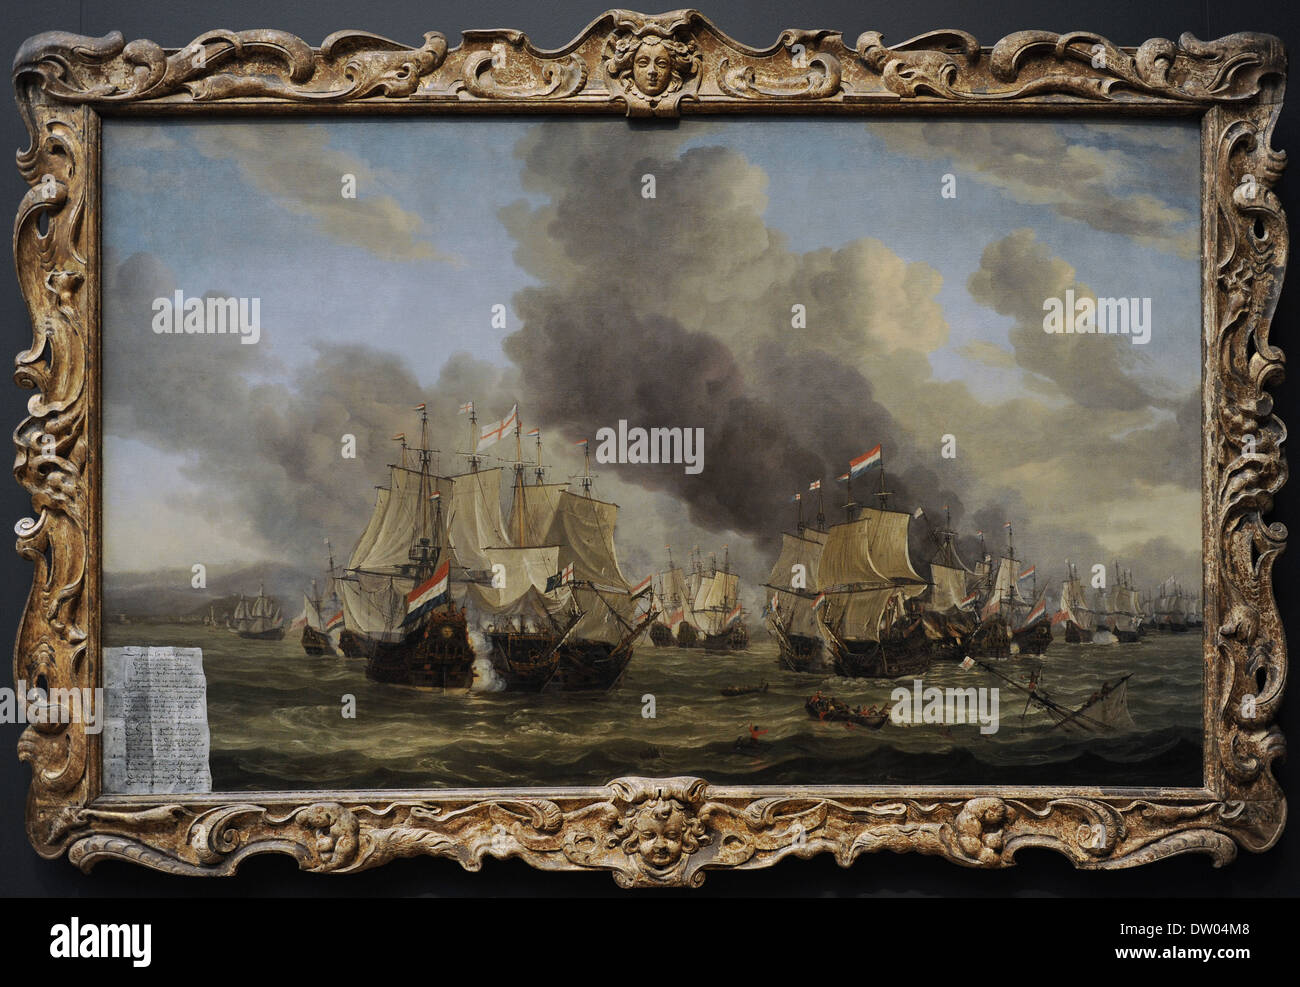 Reinier Nooms Zeeman, appelé (ch. 1623-1664). Peintre hollandais. La bataille de Livourne, 1653-1664. Rijksmuseum. Amsterdam. La Hollande. Banque D'Images